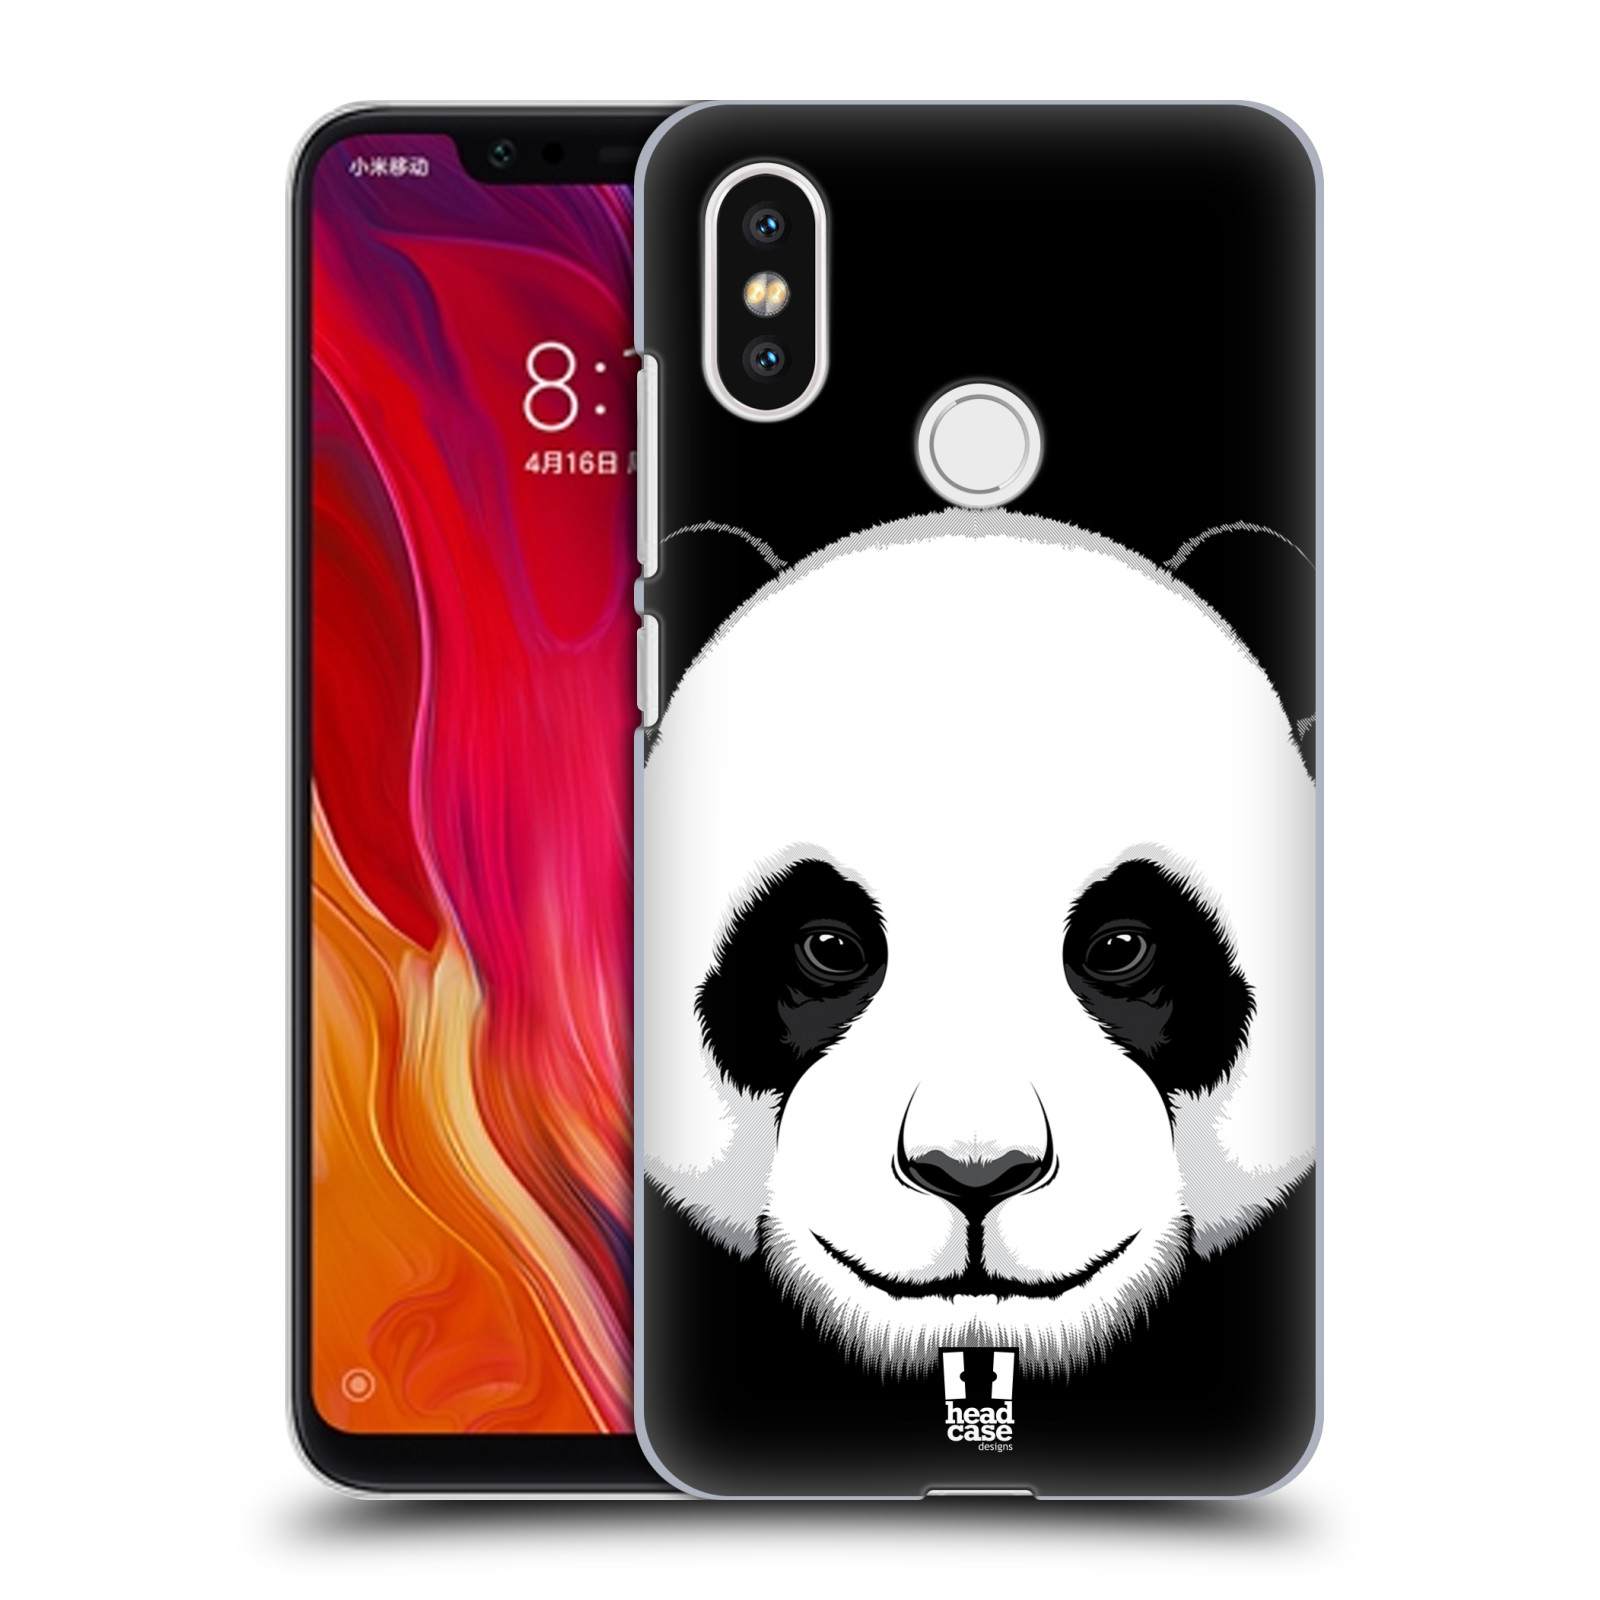 HEAD CASE plastový obal na mobil Xiaomi Mi 8 vzor Zvíře kreslená tvář panda